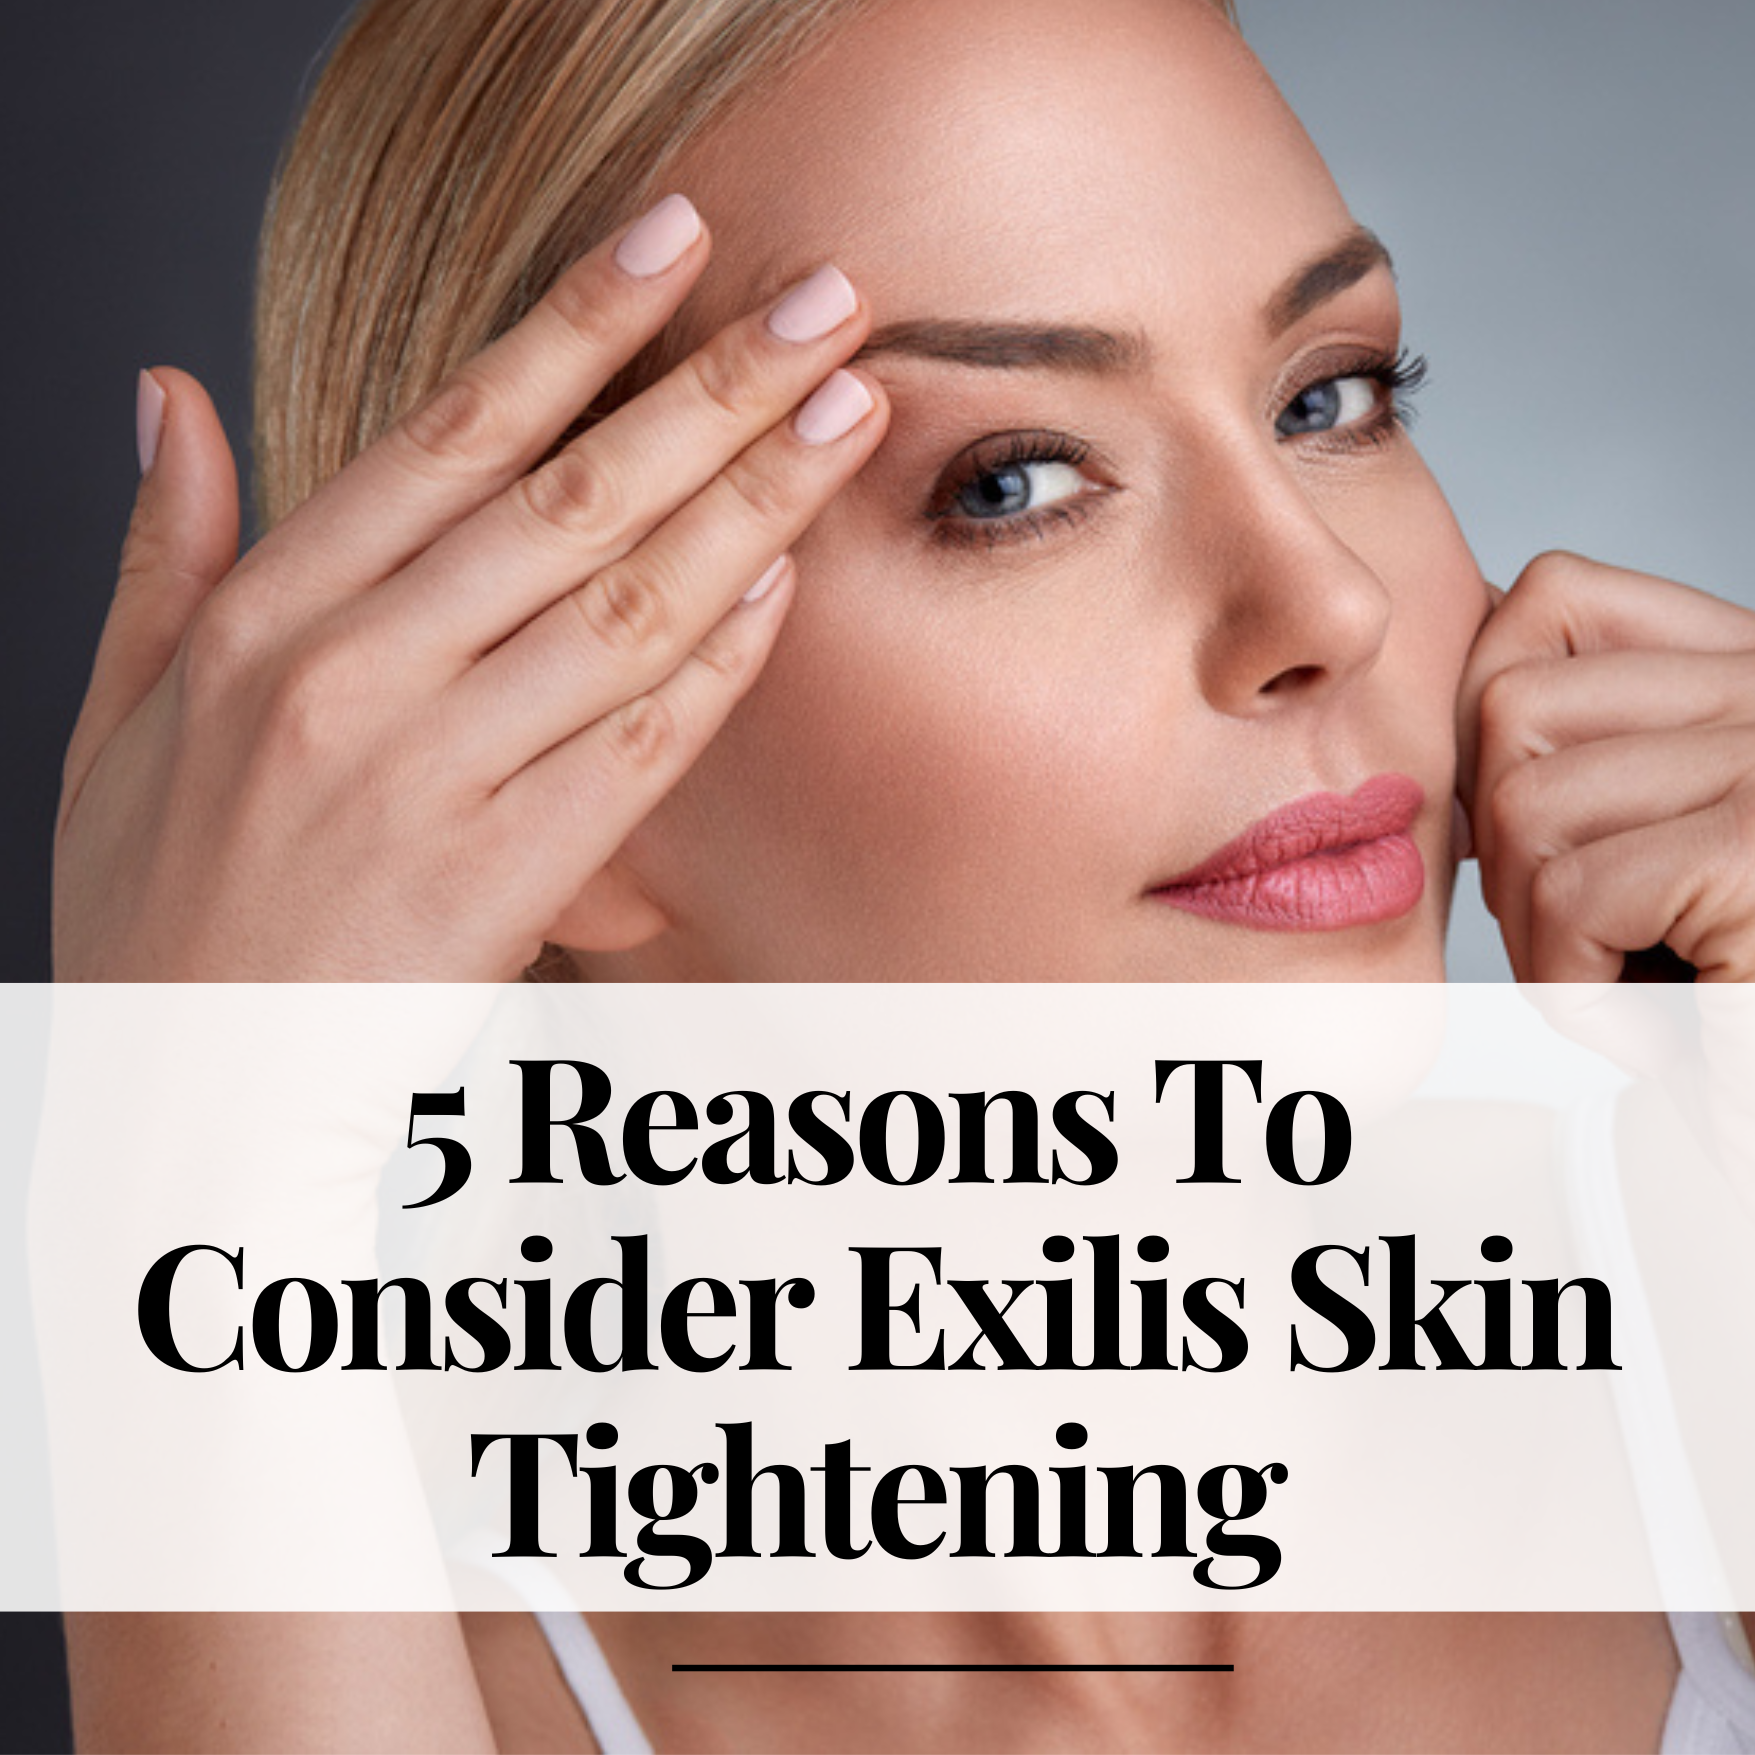 5 Reasons To Consider Exilis Skin Tightening